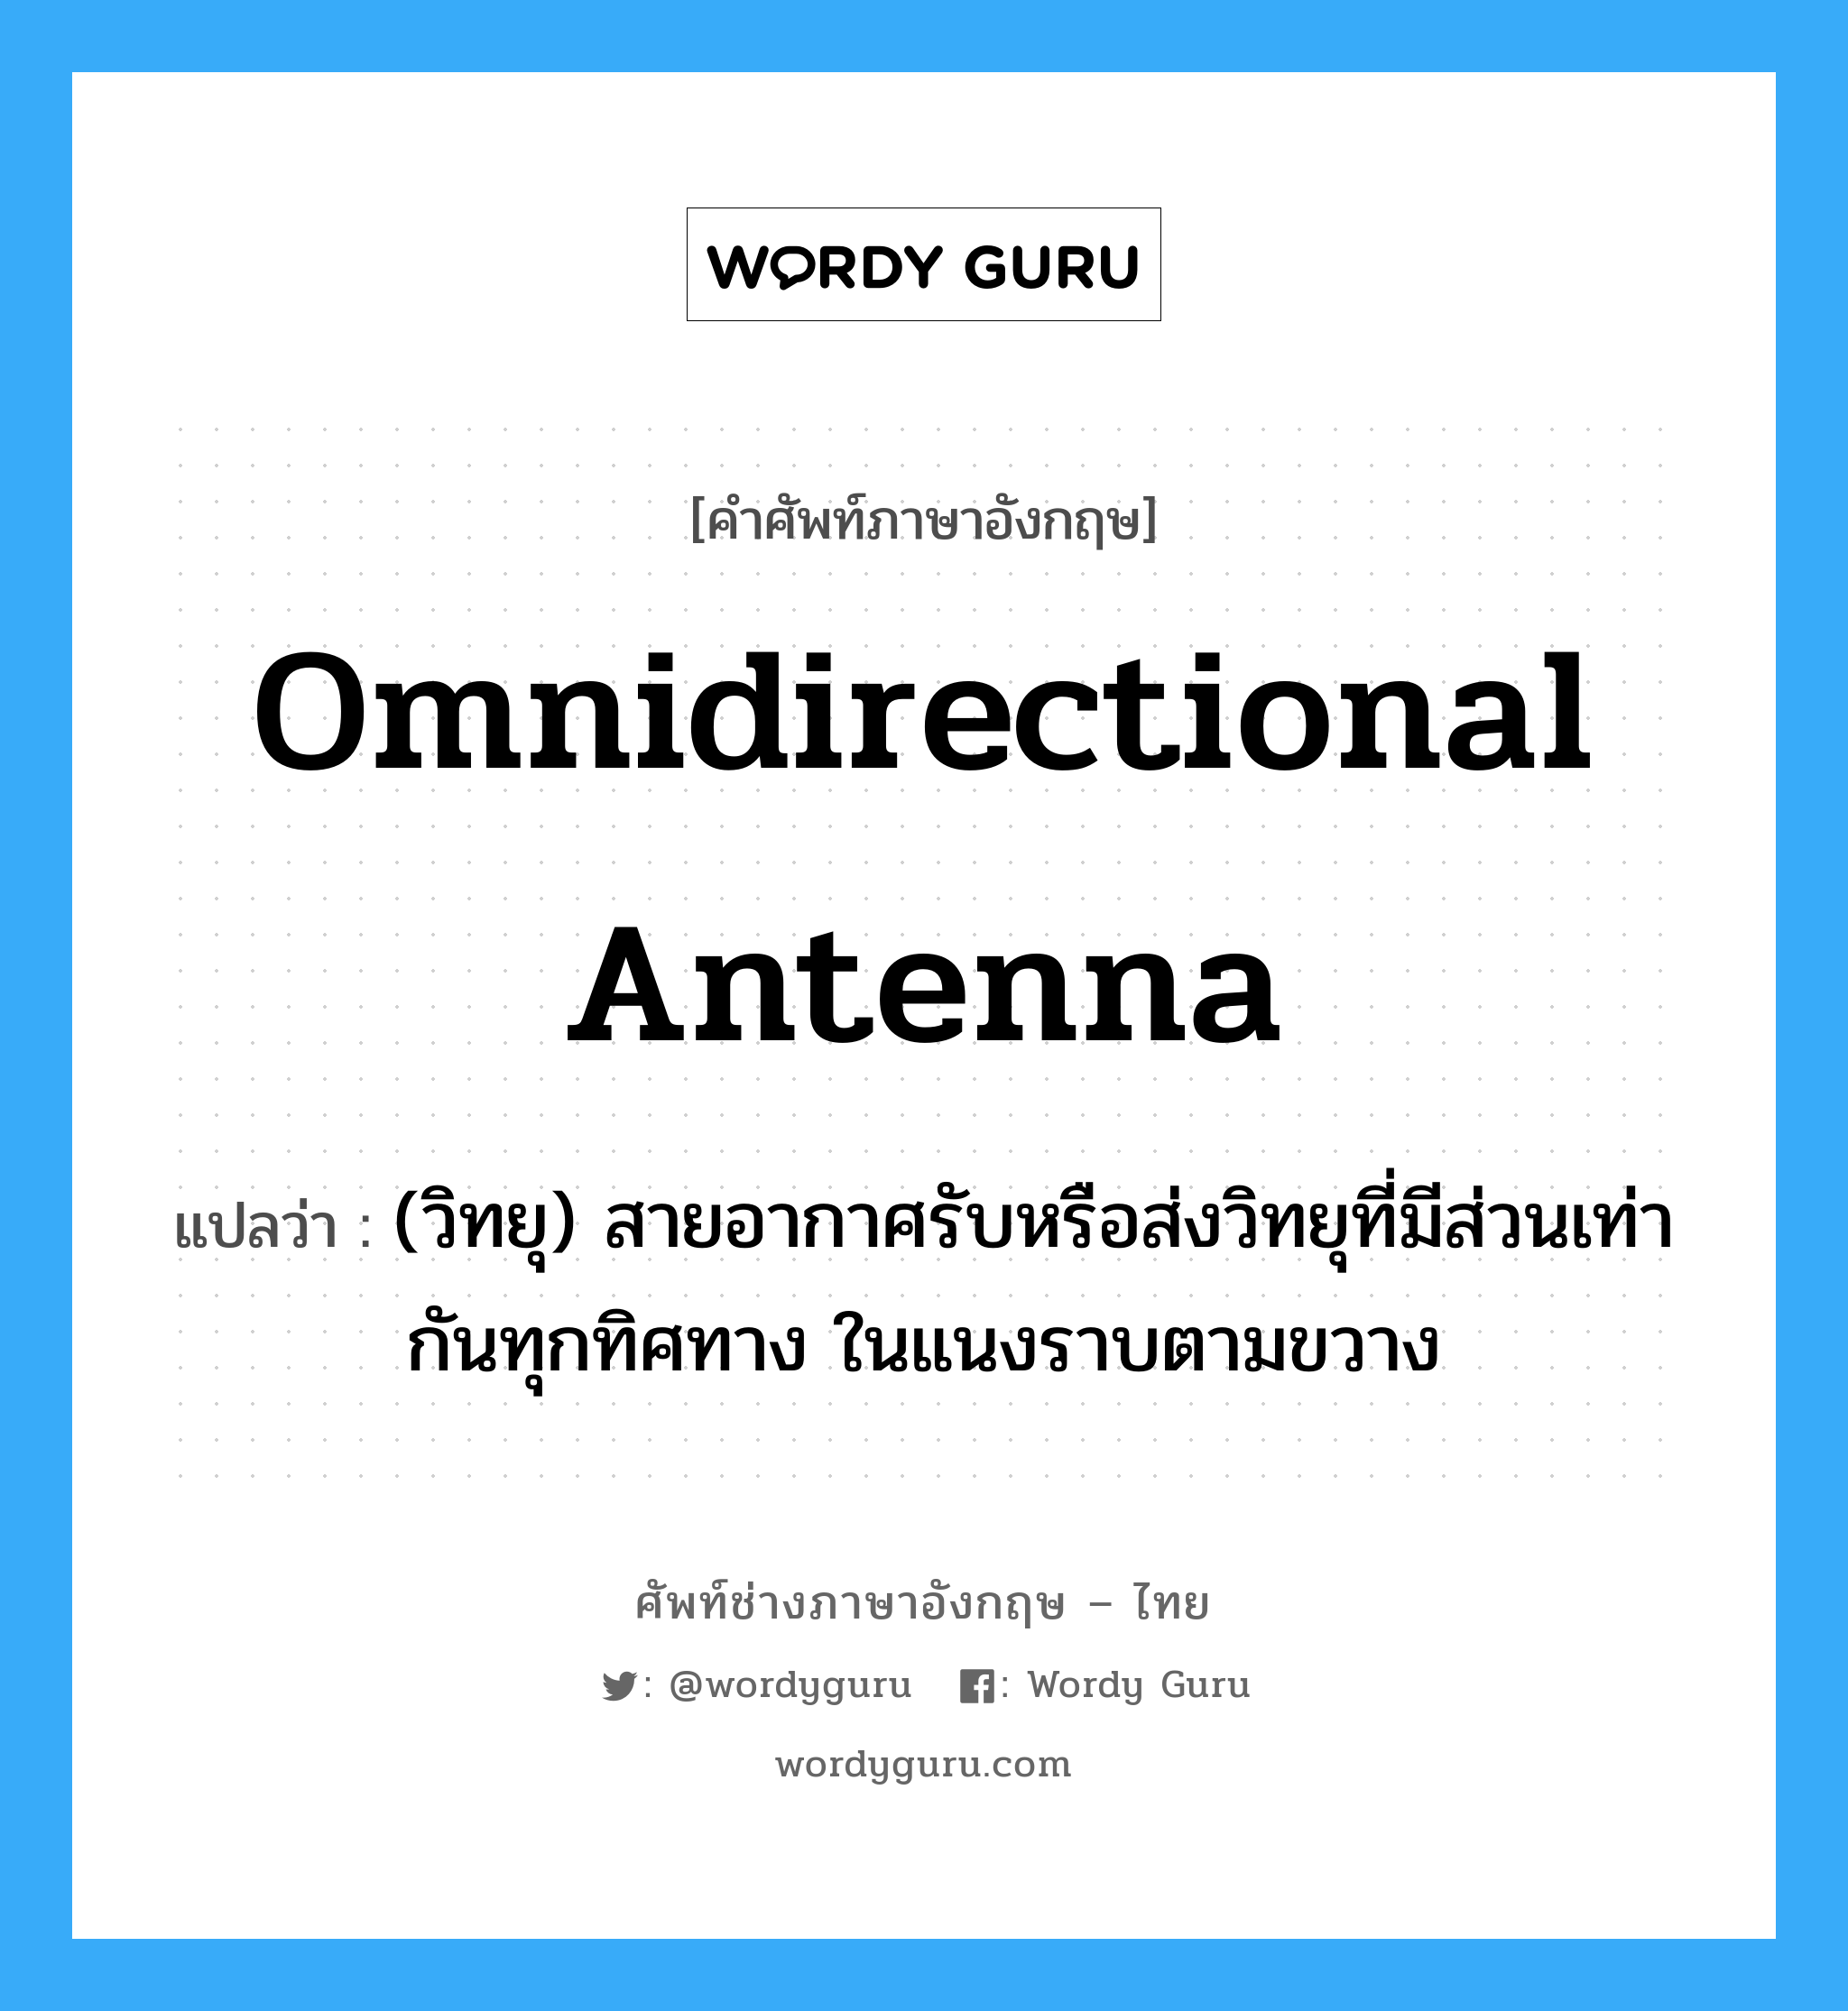 omnidirectional antenna แปลว่า?, คำศัพท์ช่างภาษาอังกฤษ - ไทย omnidirectional antenna คำศัพท์ภาษาอังกฤษ omnidirectional antenna แปลว่า (วิทยุ) สายอากาศรับหรือส่งวิทยุที่มีส่วนเท่ากันทุกทิศทาง ในแนงราบตามขวาง